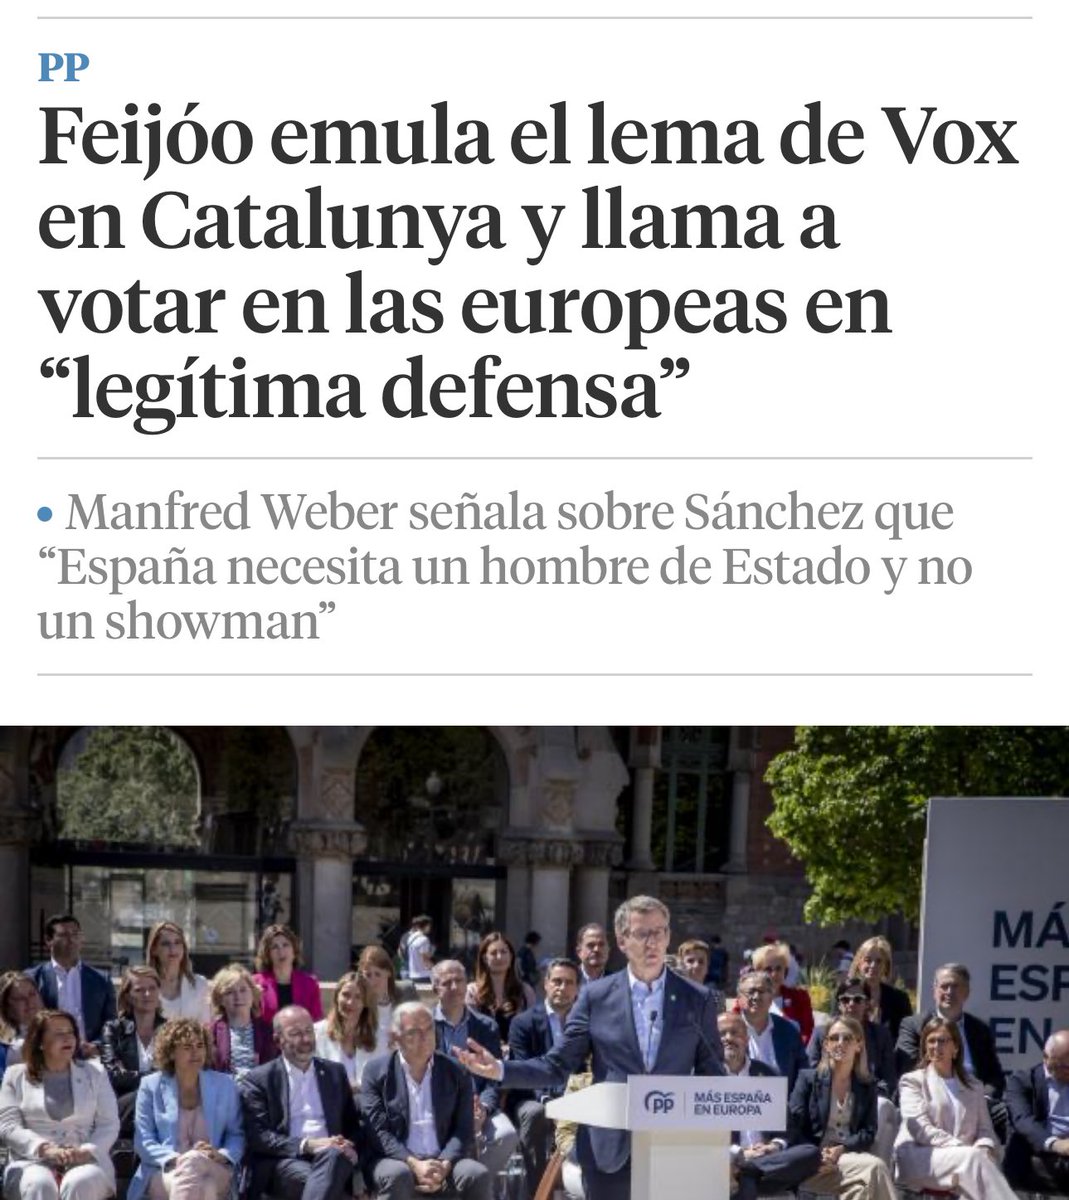 Feijóo ha logrado que no haya diferencias entre la extrema derecha de VOX y el PP. Es un fracaso rotundo para la democracia que el principal partido de la oposición asuma como propias las posiciones excluyentes que dividen a la sociedad y rompen consensos fundamentales.